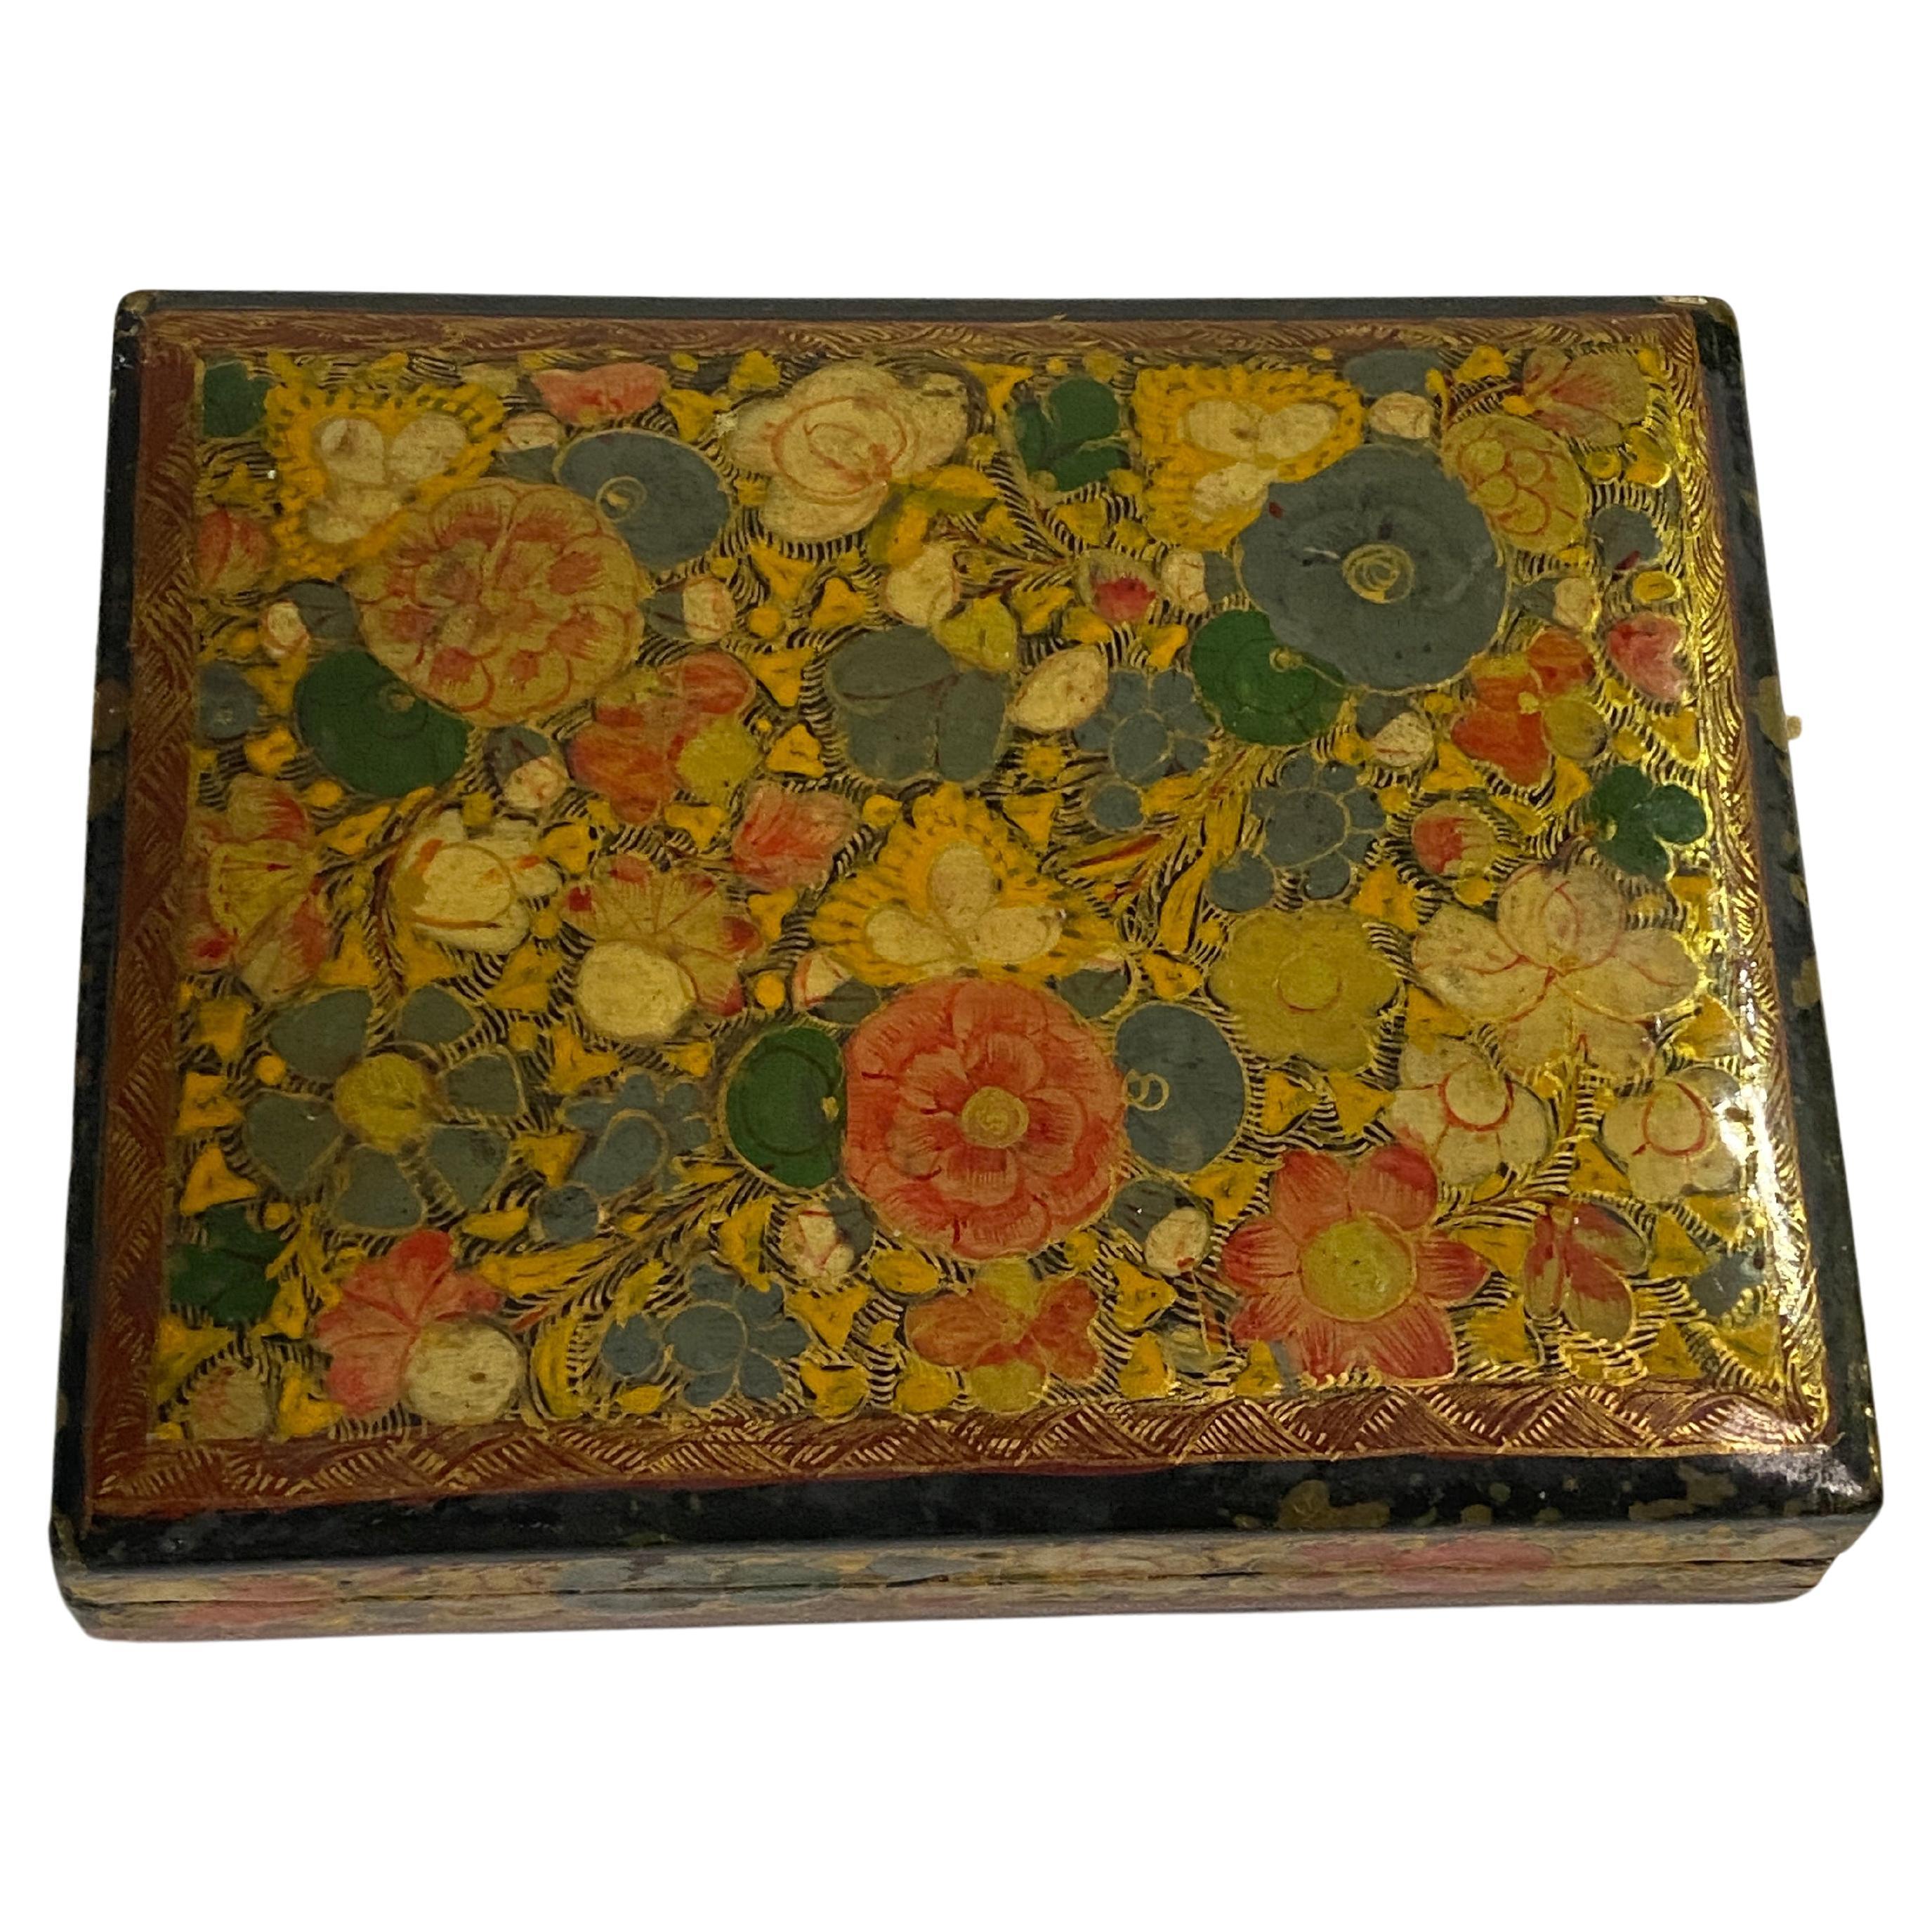 Chinesische Schachtel mit Blumenmuster-Dekor, lackiert, 19. Jahrhundert